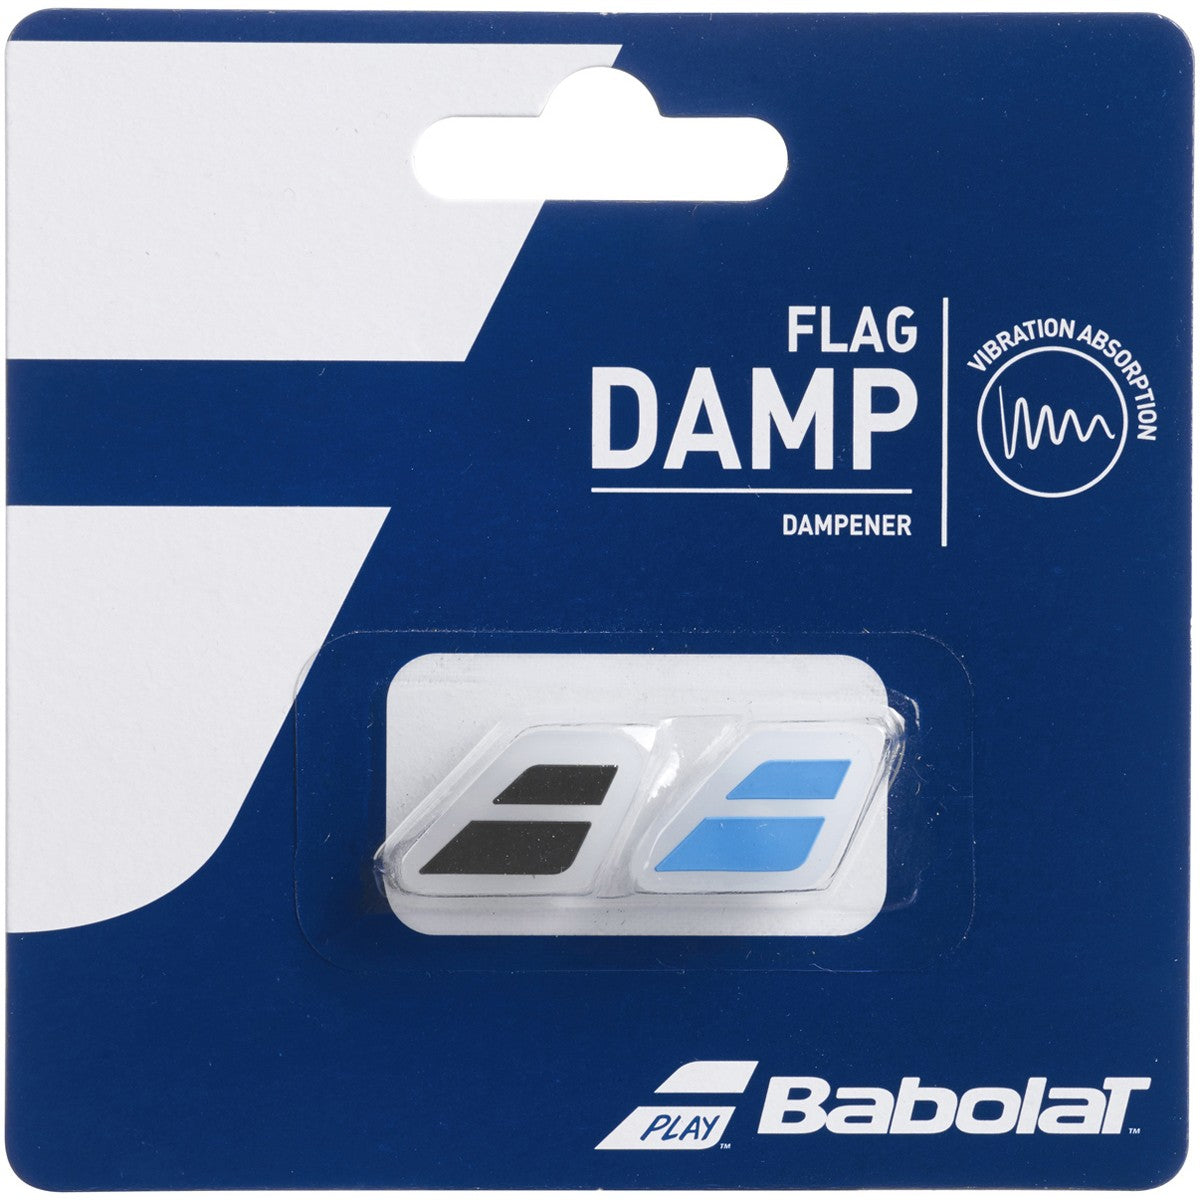 Babolat Flag Damp Shock Absorber